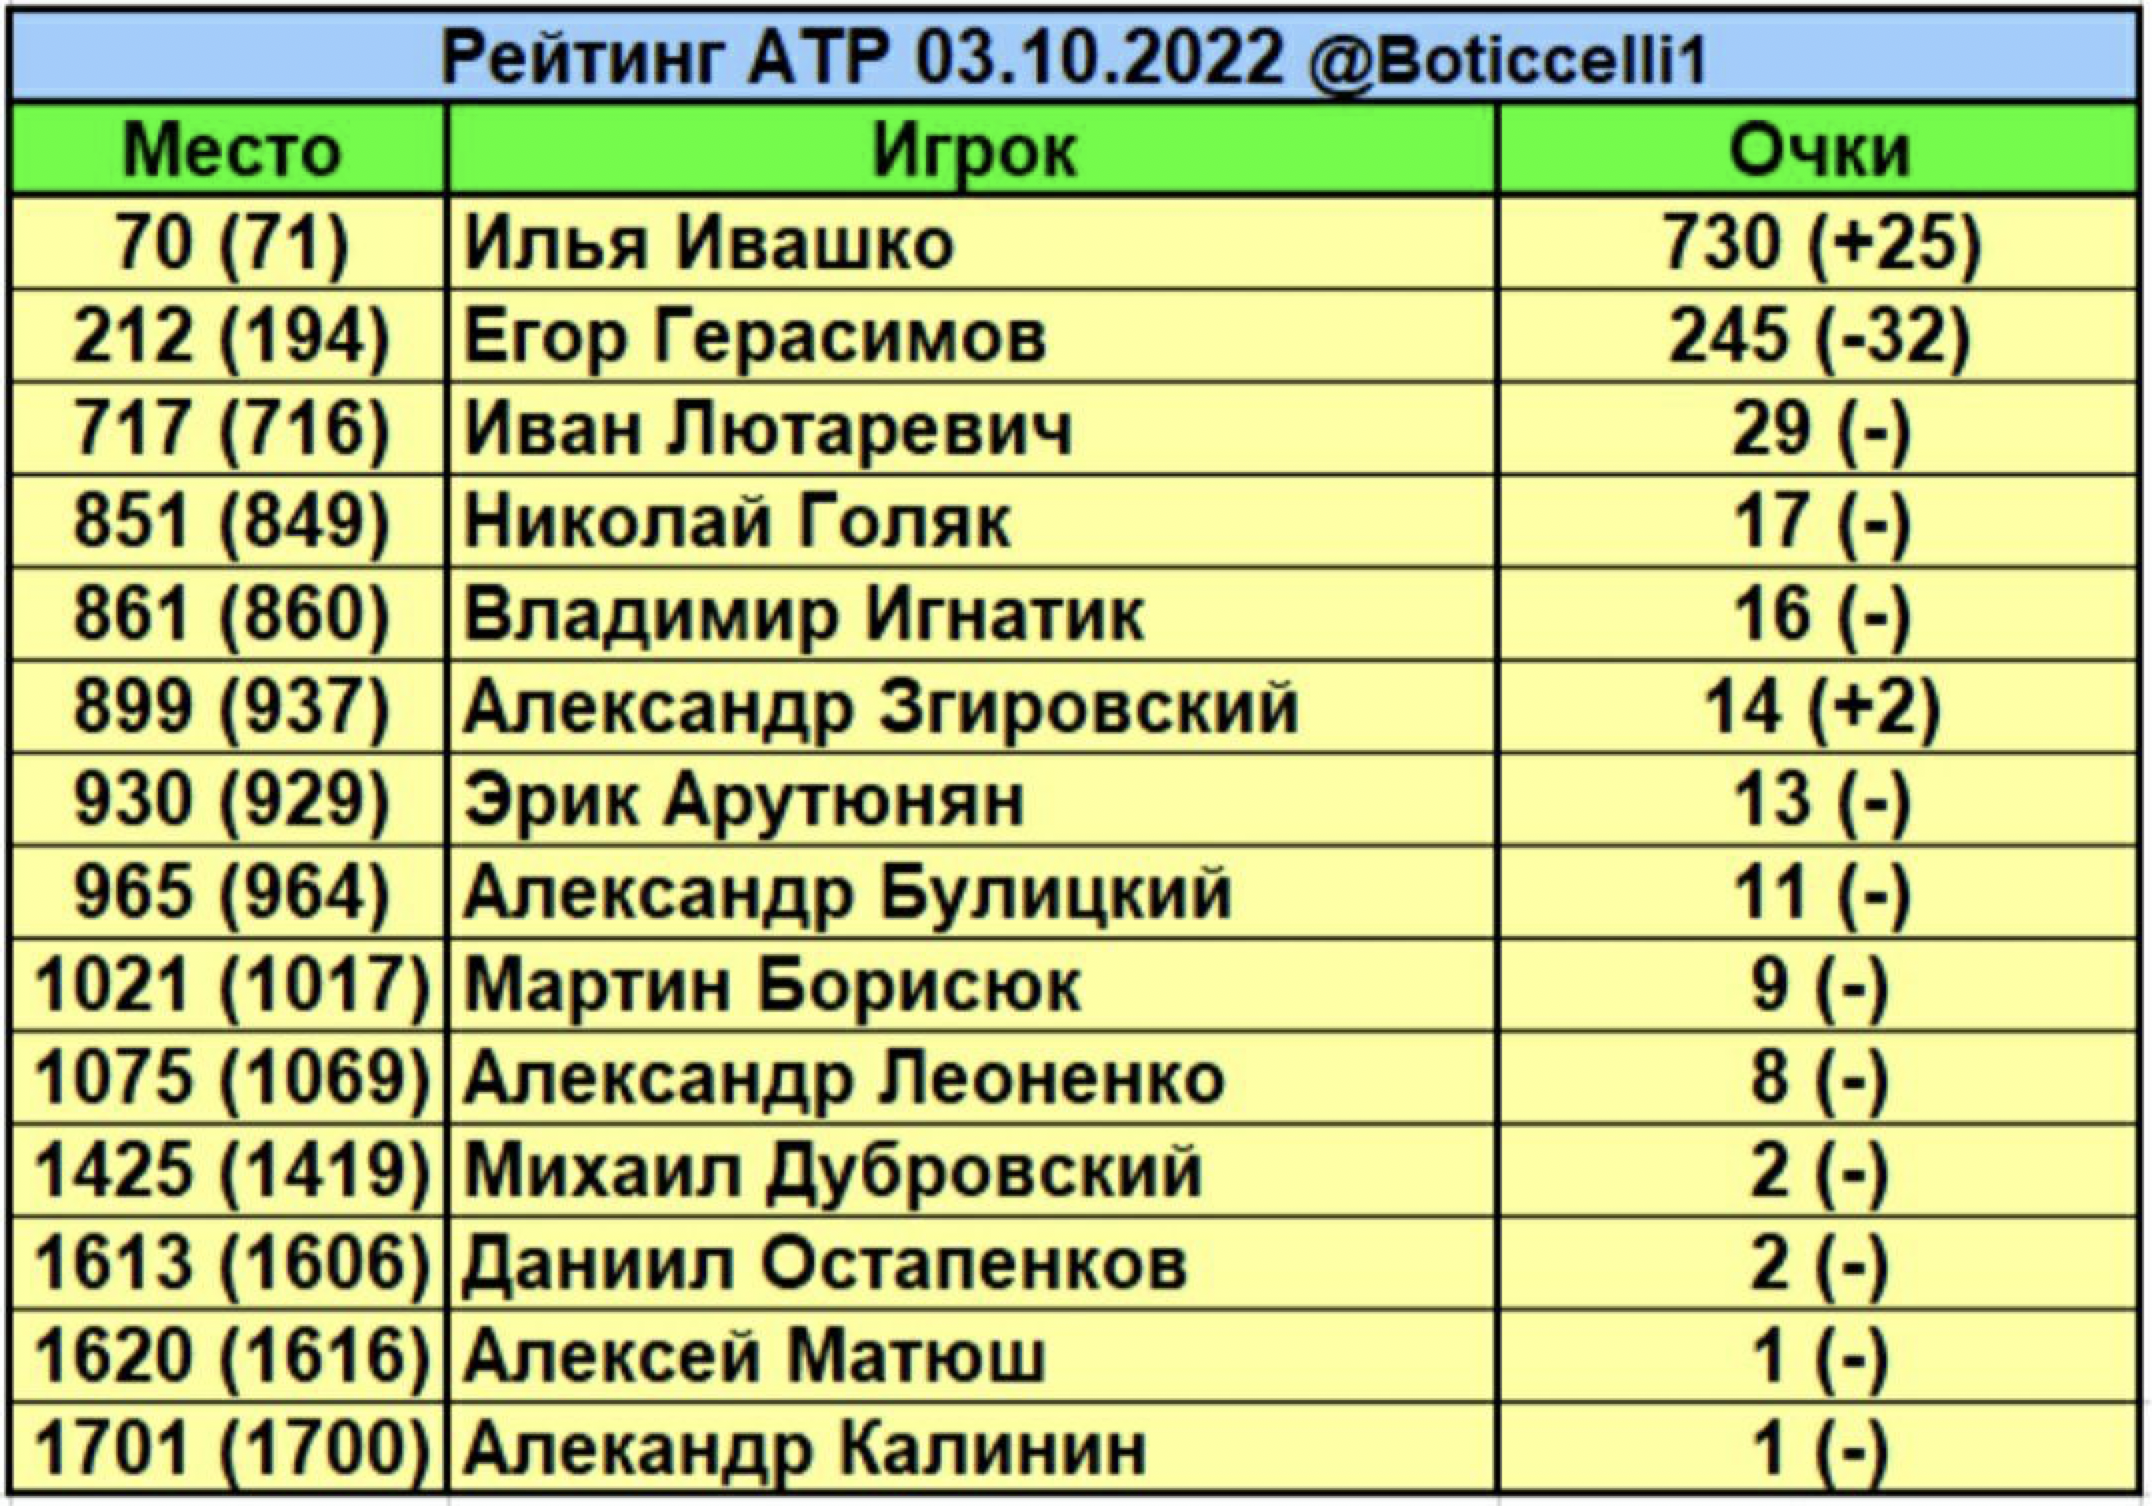 Рейтинг АТП. Рейтинг ATP. Теннис рейтинг. Рейтинг АТП по годам. Рейтинг атр мужчины с прогнозом следующую неделю